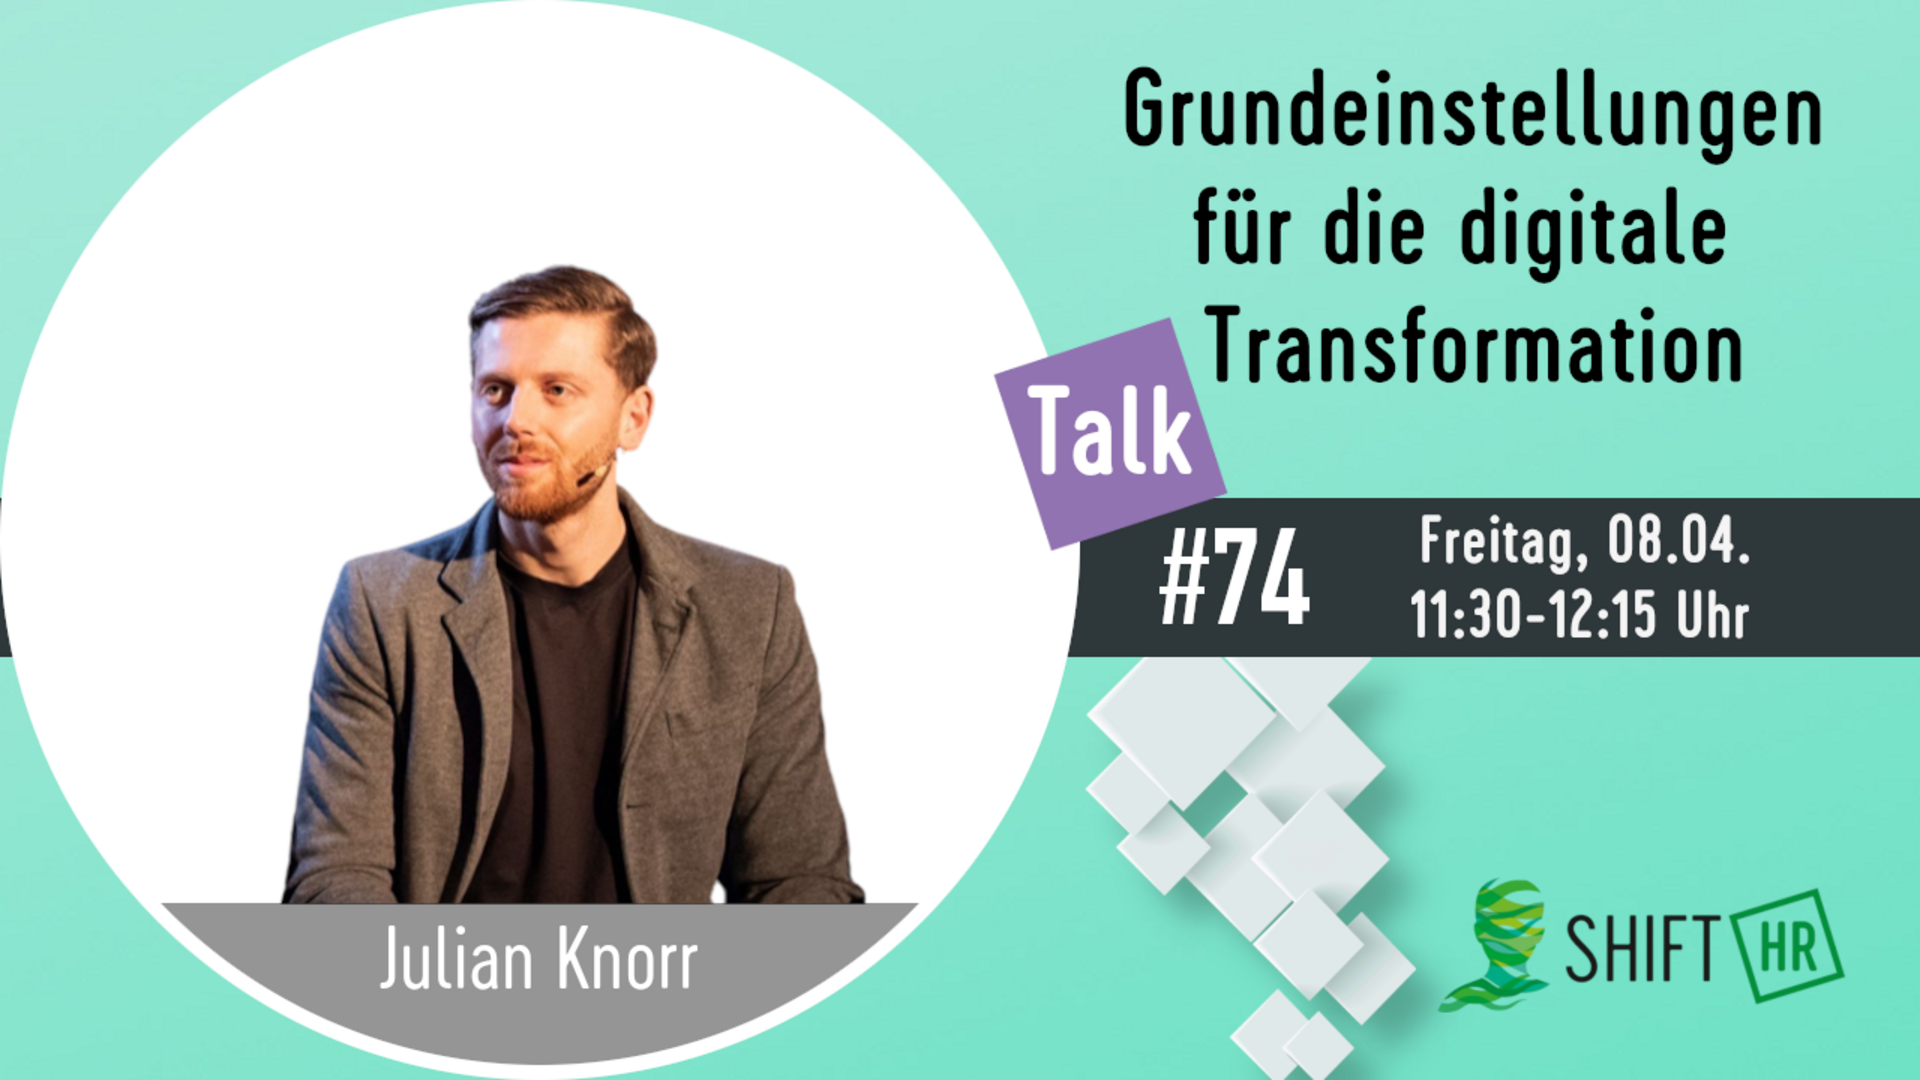 Im Gespräch mit Julian Knorr zu wichtigen Grundeinstellungen für die digitale Transformation